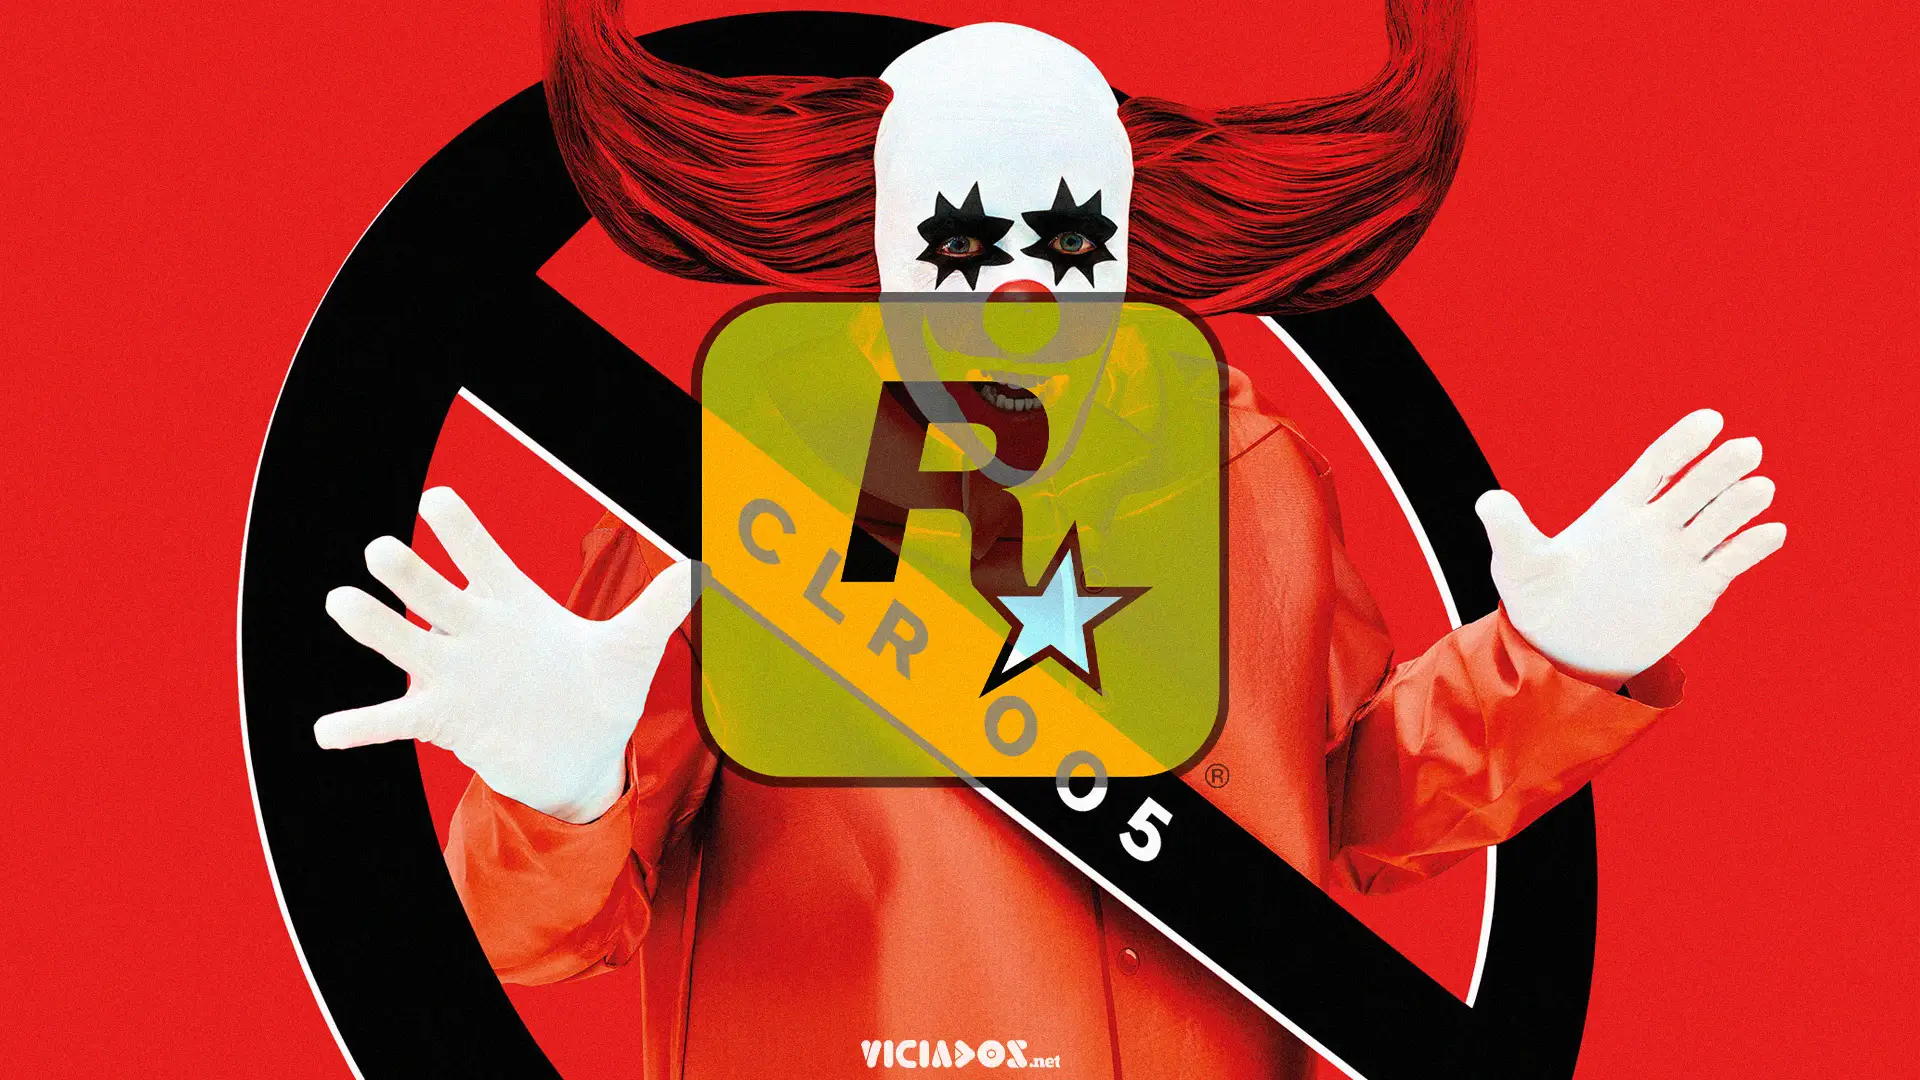 CircoLoco Records | Rockstar Games apresenta novo single com IZA, do Map.ache 2023 Viciados